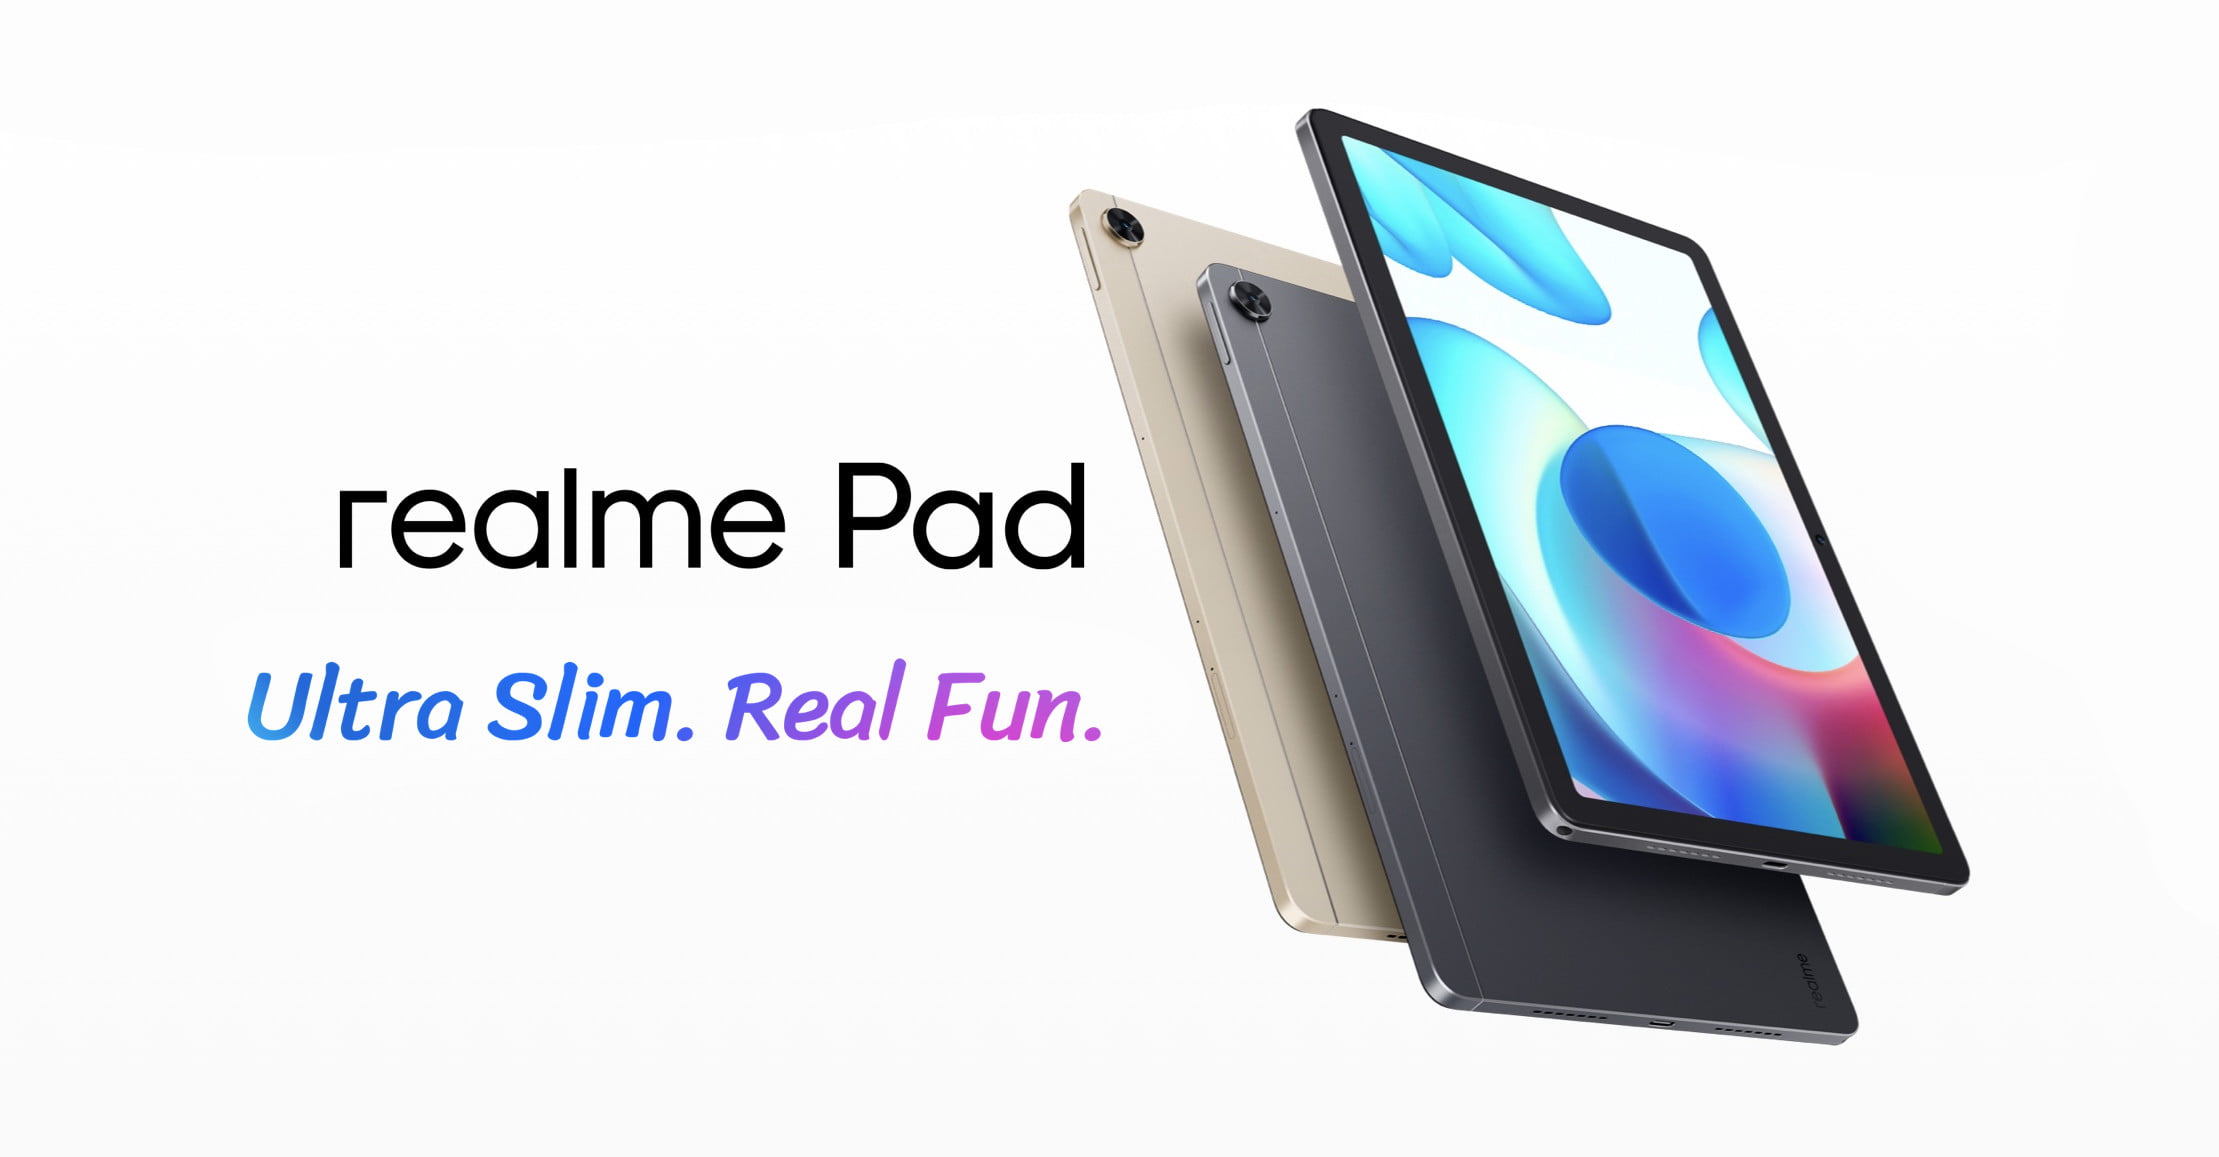 realme pad-tablet